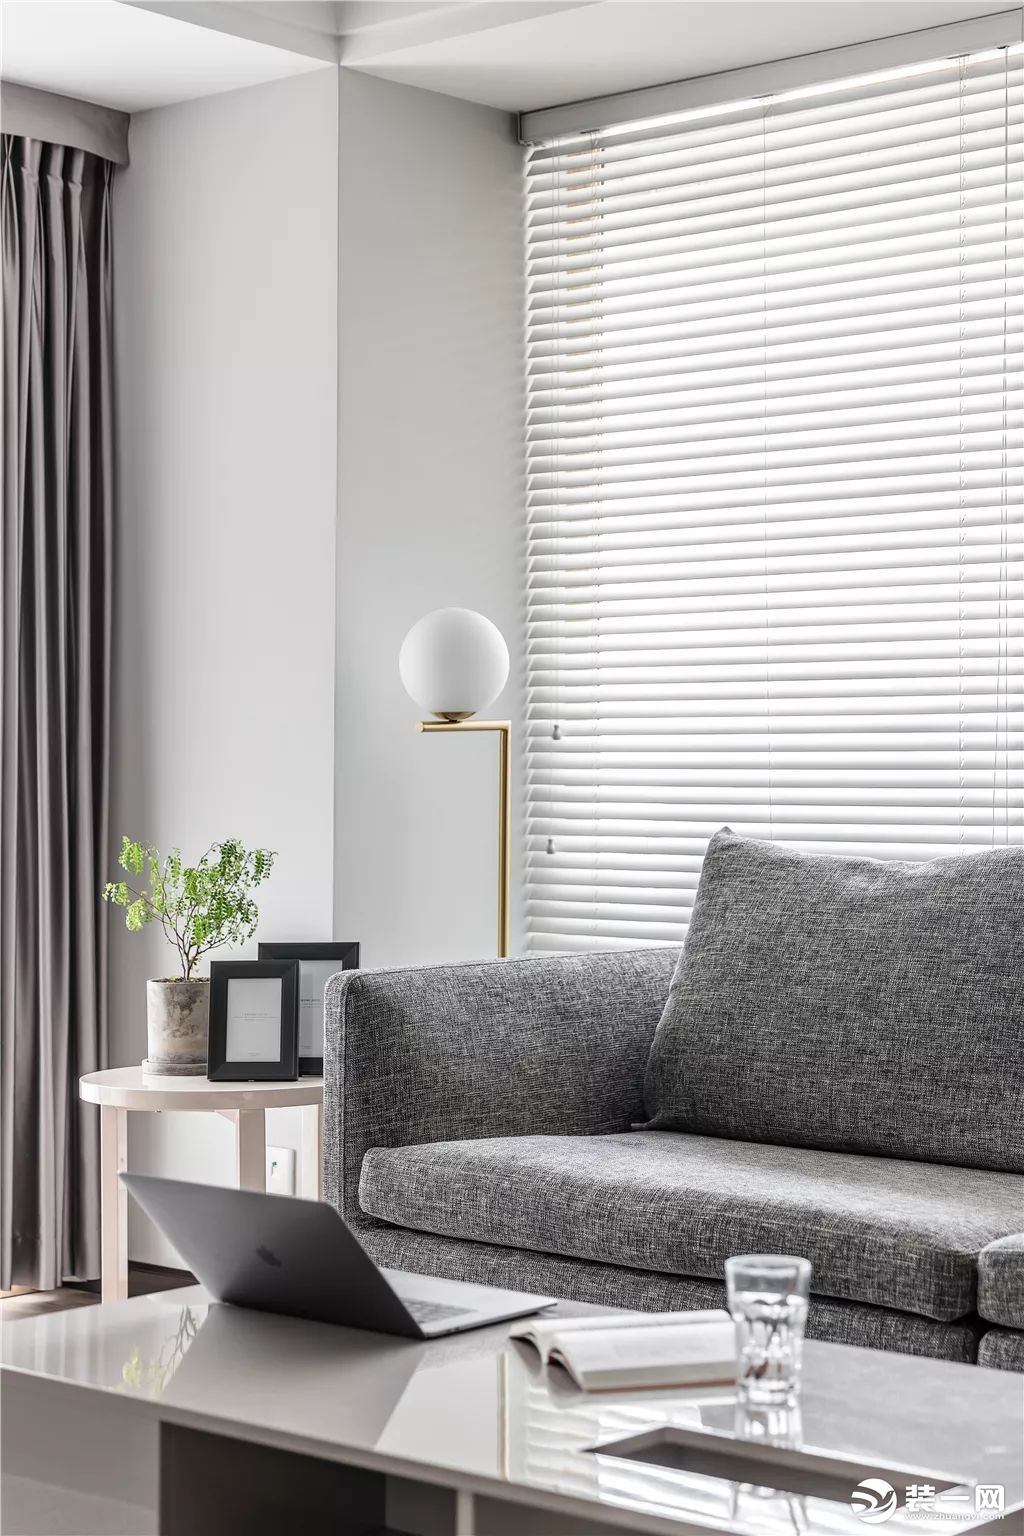 4茶几与边几，还有落地灯的布置，结合质感舒适的灰色布艺沙发，都使得客厅情趣而优雅。